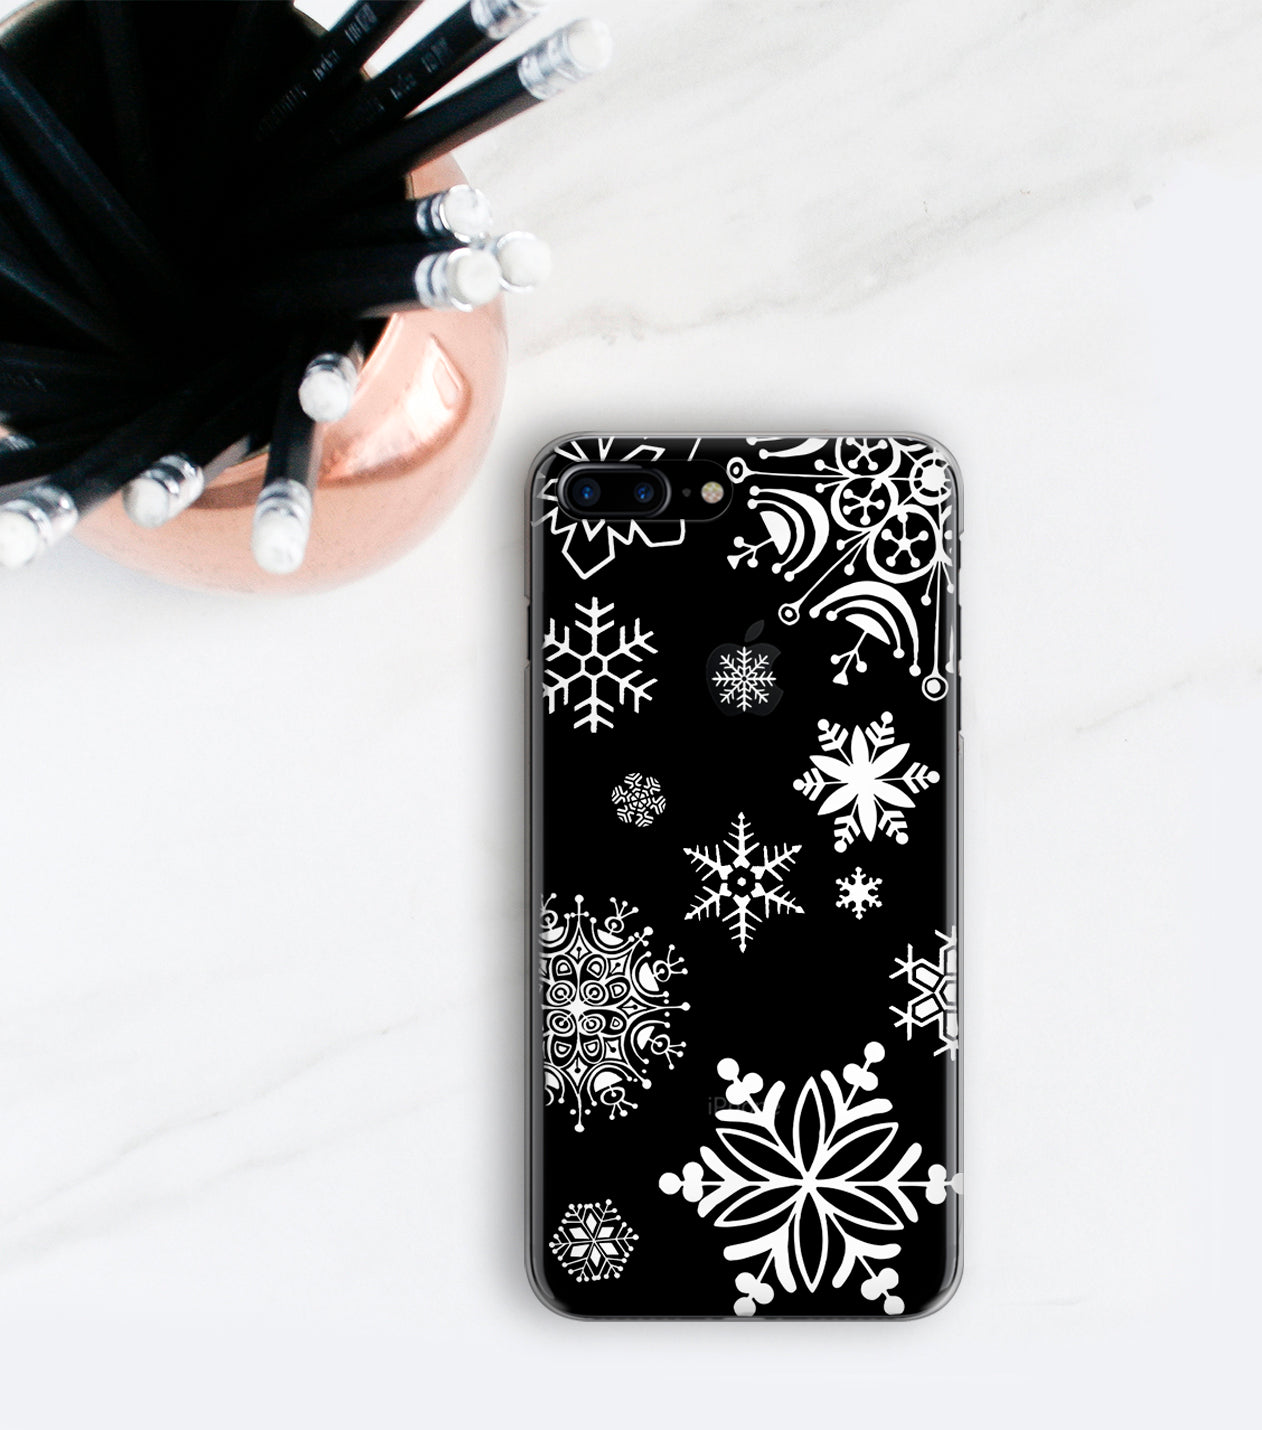 White Snowflakes iPhone 7 Plus case